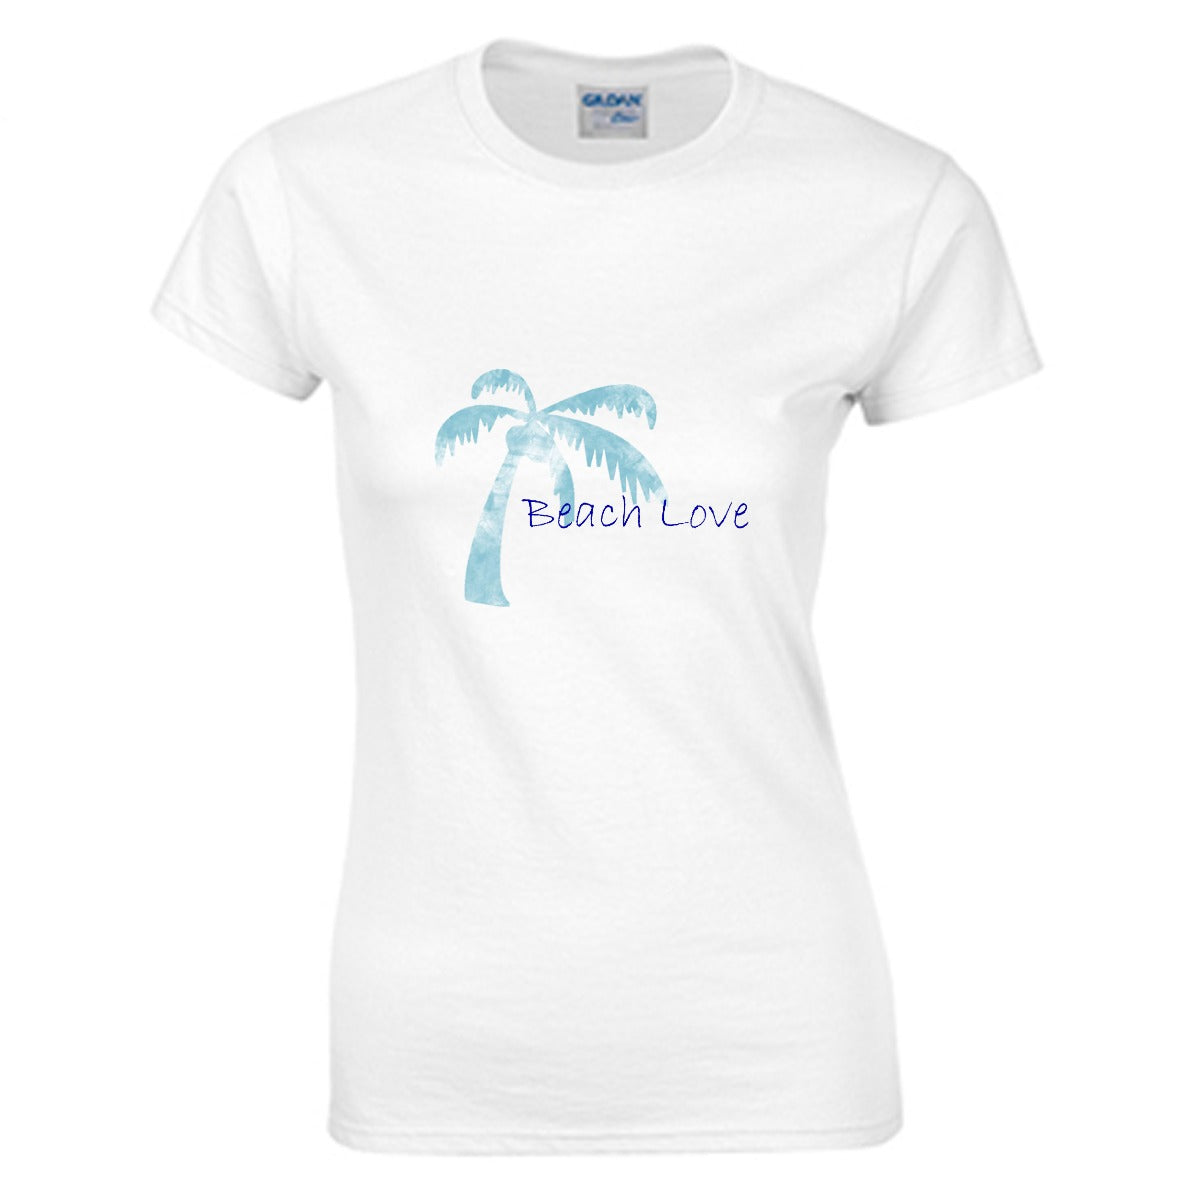 Beach Love Women's T-shirt (100% Cotton) - T0365